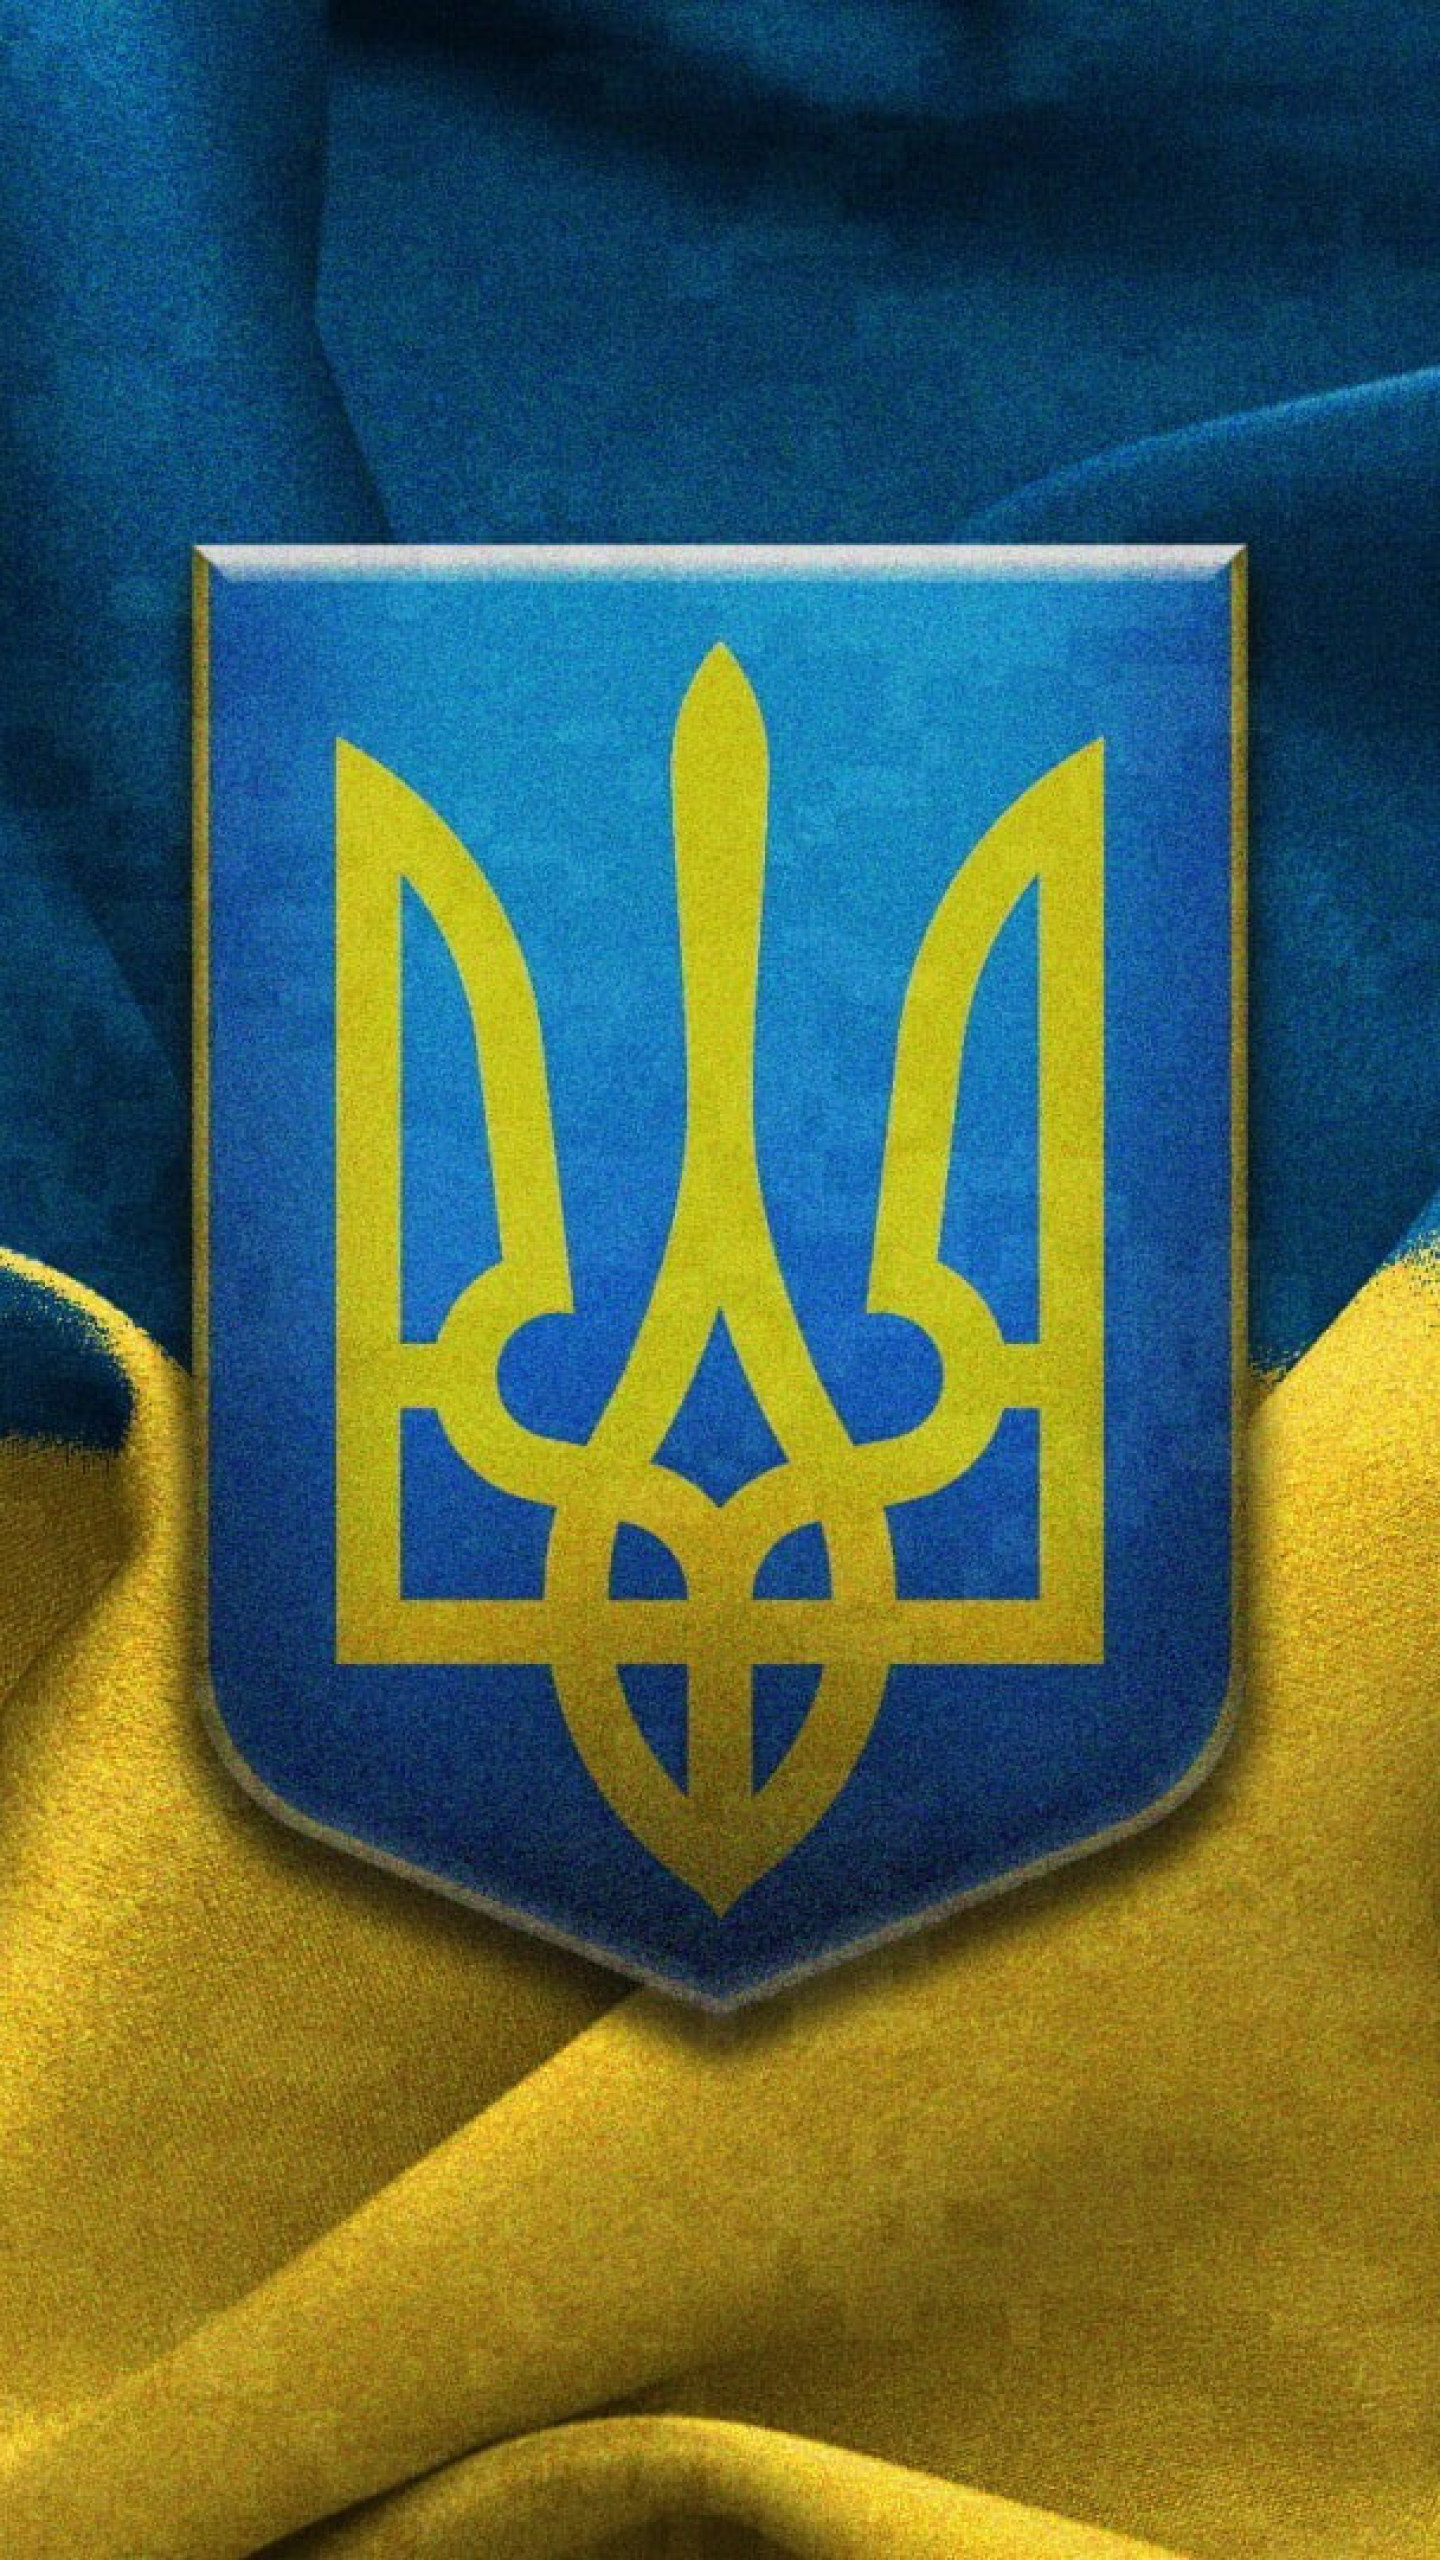 Bạn yêu thích công nghệ và văn hóa Ukraina? Hãy làm hình nền của điện thoại của bạn trở nên độc đáo hơn với những bức hình nền Android Ukraina. Từ những biểu tượng quen thuộc đến những hình ảnh độc đáo và mới lạ, chắc chắn bạn sẽ tìm thấy bức hình ưa thích cho mình.